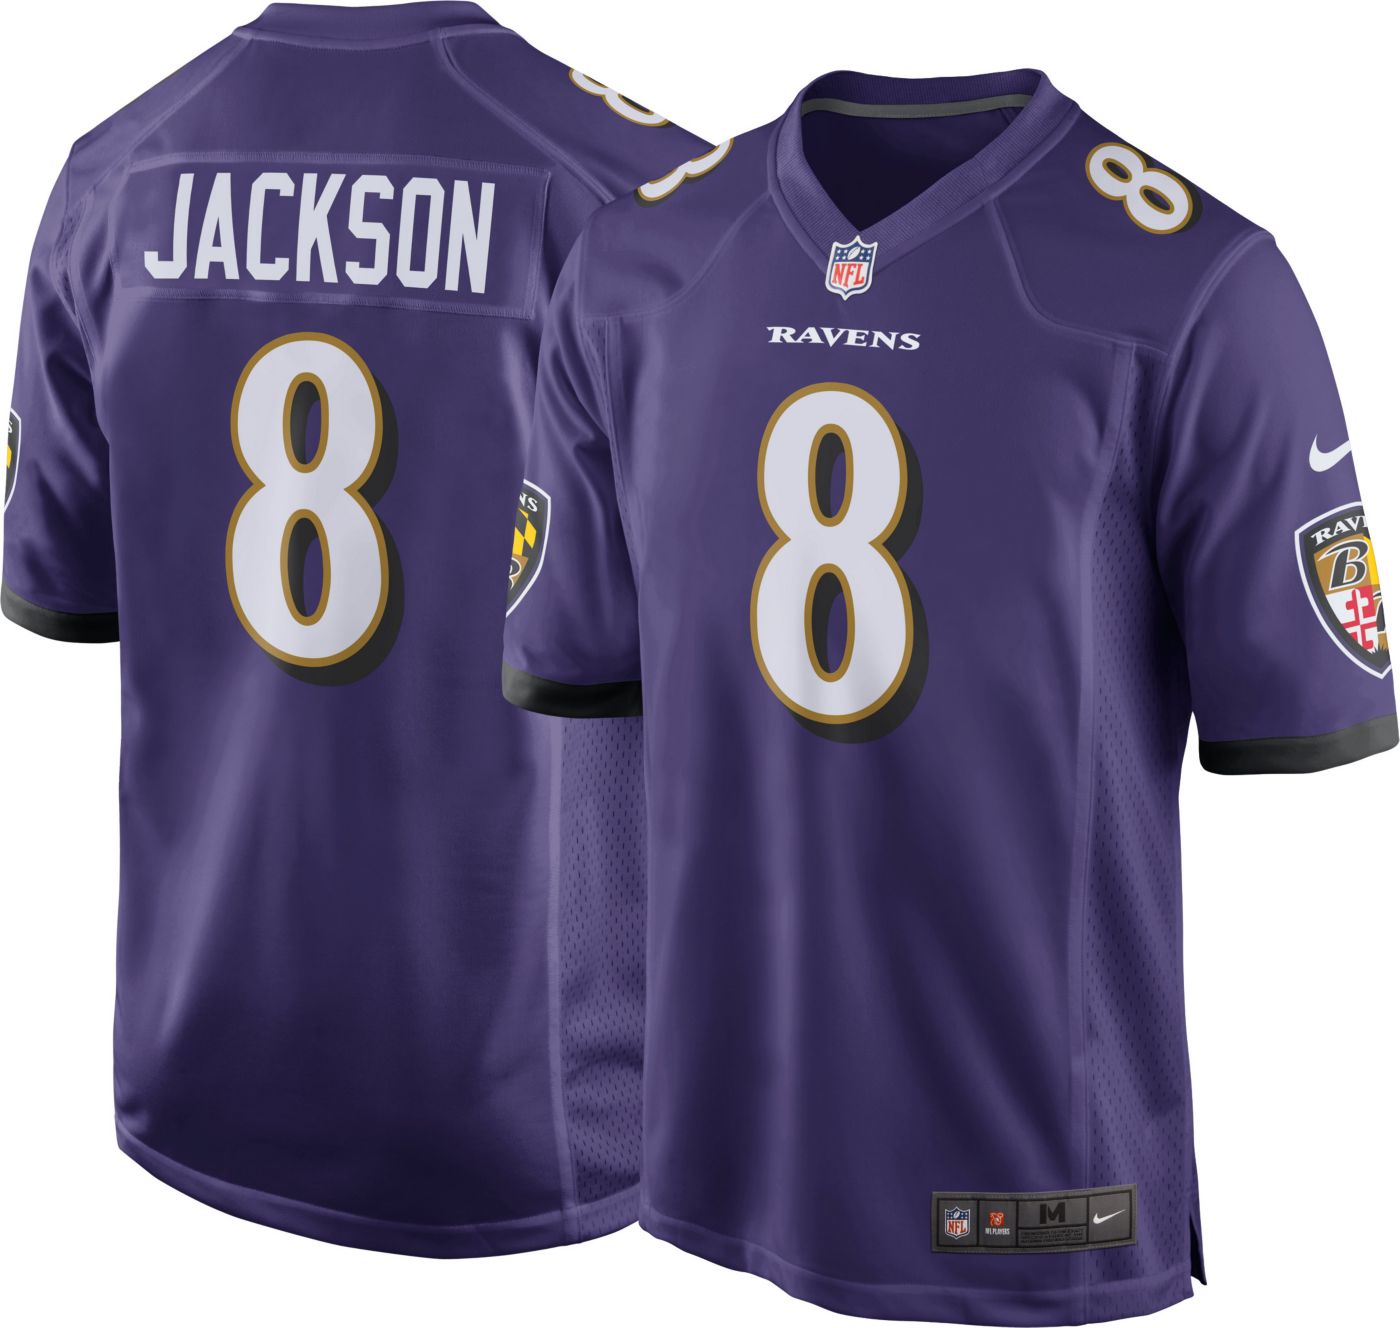 Lamar Jackson #8 Nike Men's Baltimore Ravens Home Game Jersey | DICK'S Sporting Goods